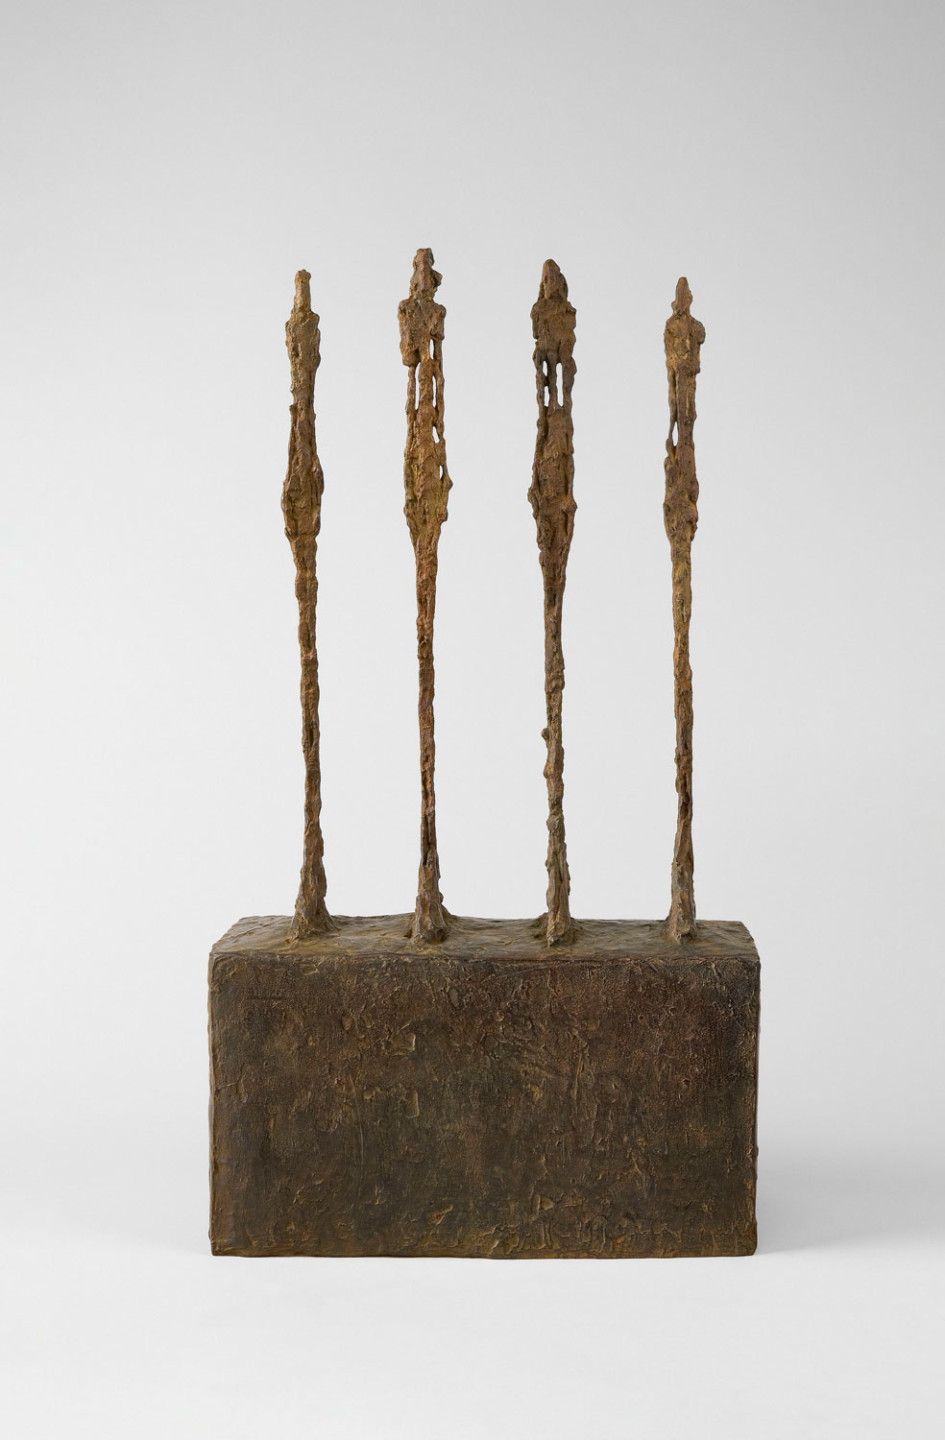 Sculpture by Alberto Giacometti